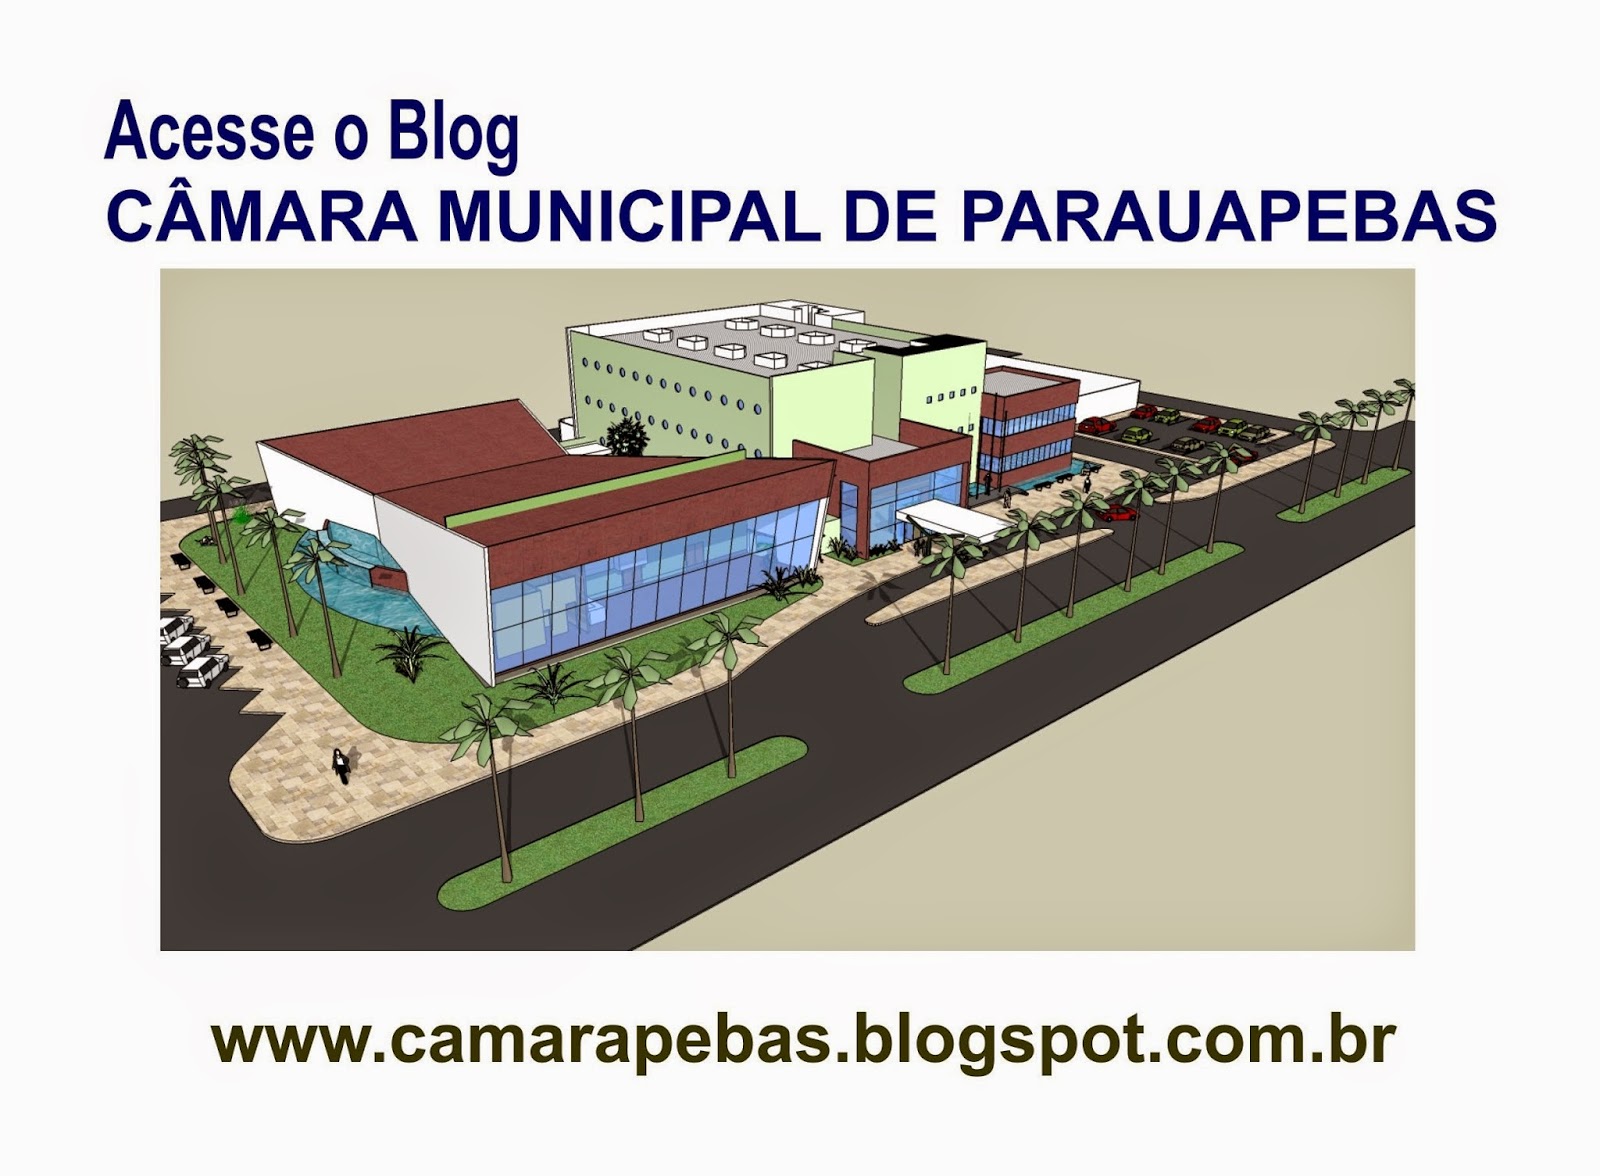 http://camarapebas.blogspot.com.br/